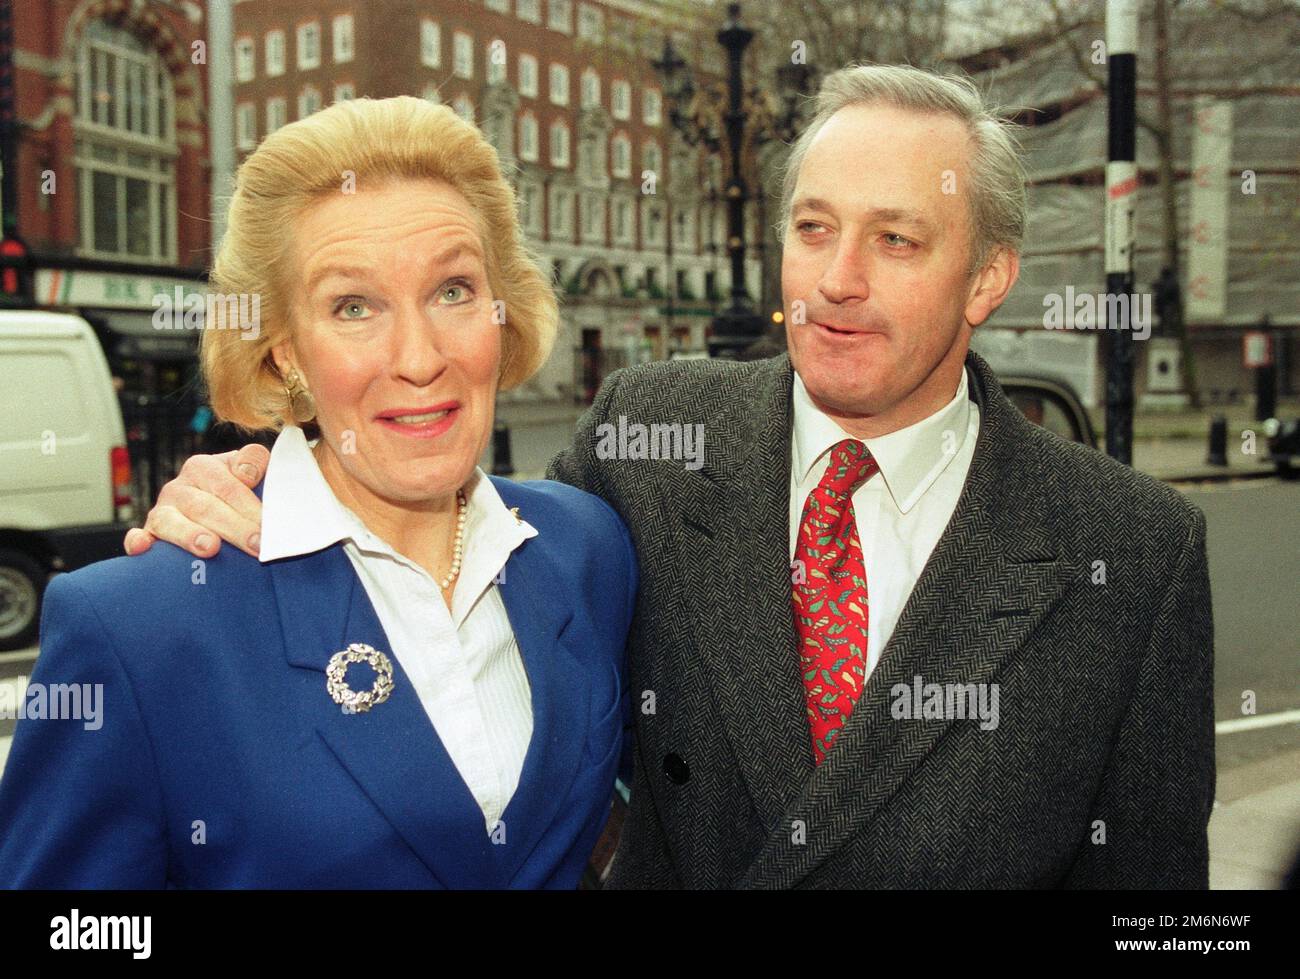 Neil Hamilton arrivant à la haute Cour avec l'épouse Christine, où il poursuit Mohamed Al Fayed au sujet de « cash for questions », 14th novembre 1999. Banque D'Images